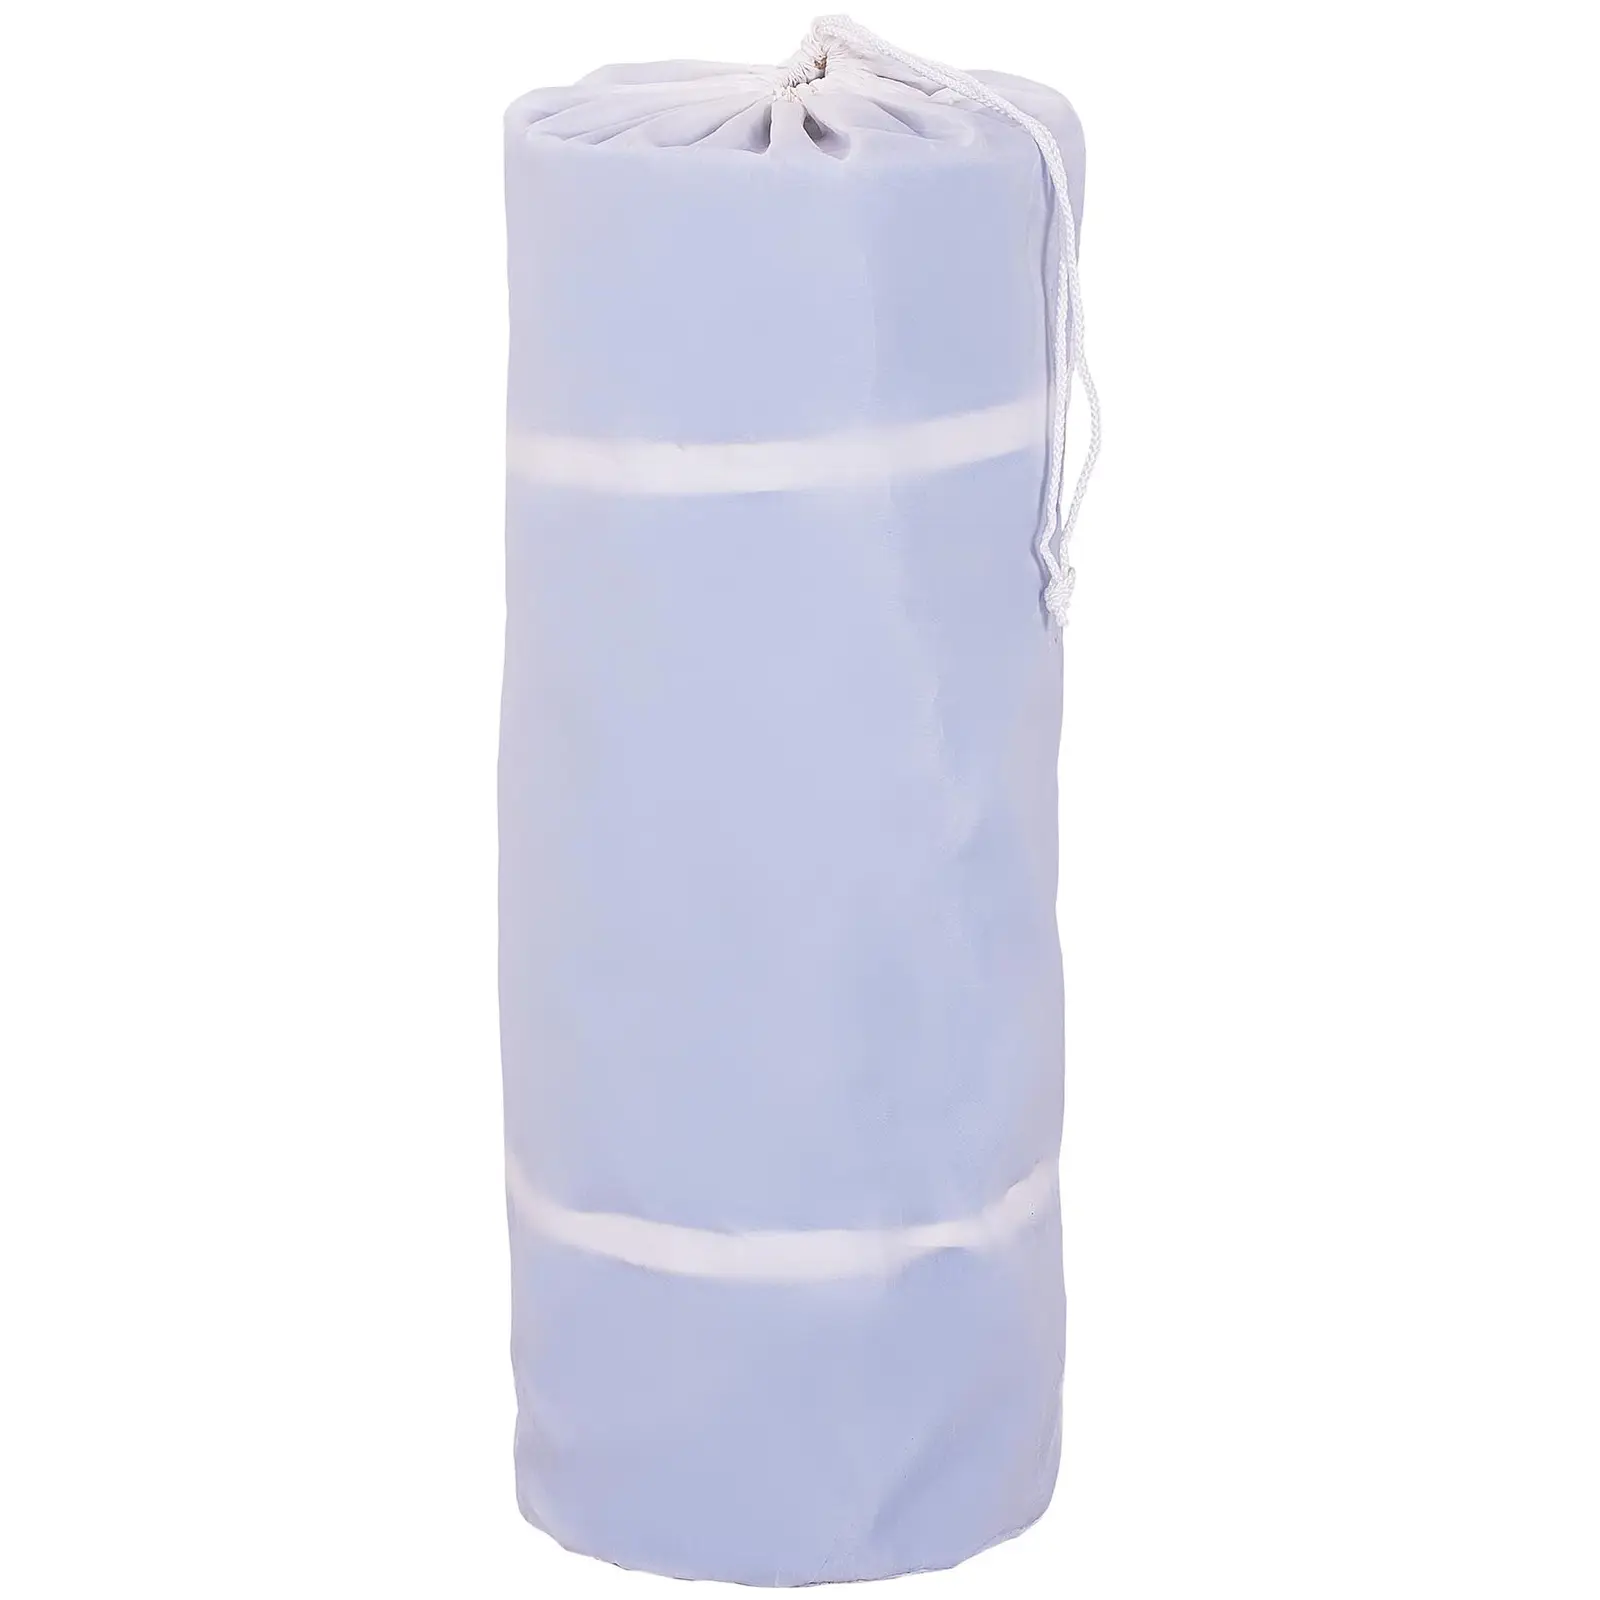 Tappeto da ginnastica gonfiabile - 600 x 100 x 20 cm - 300 kg - blu/bianco